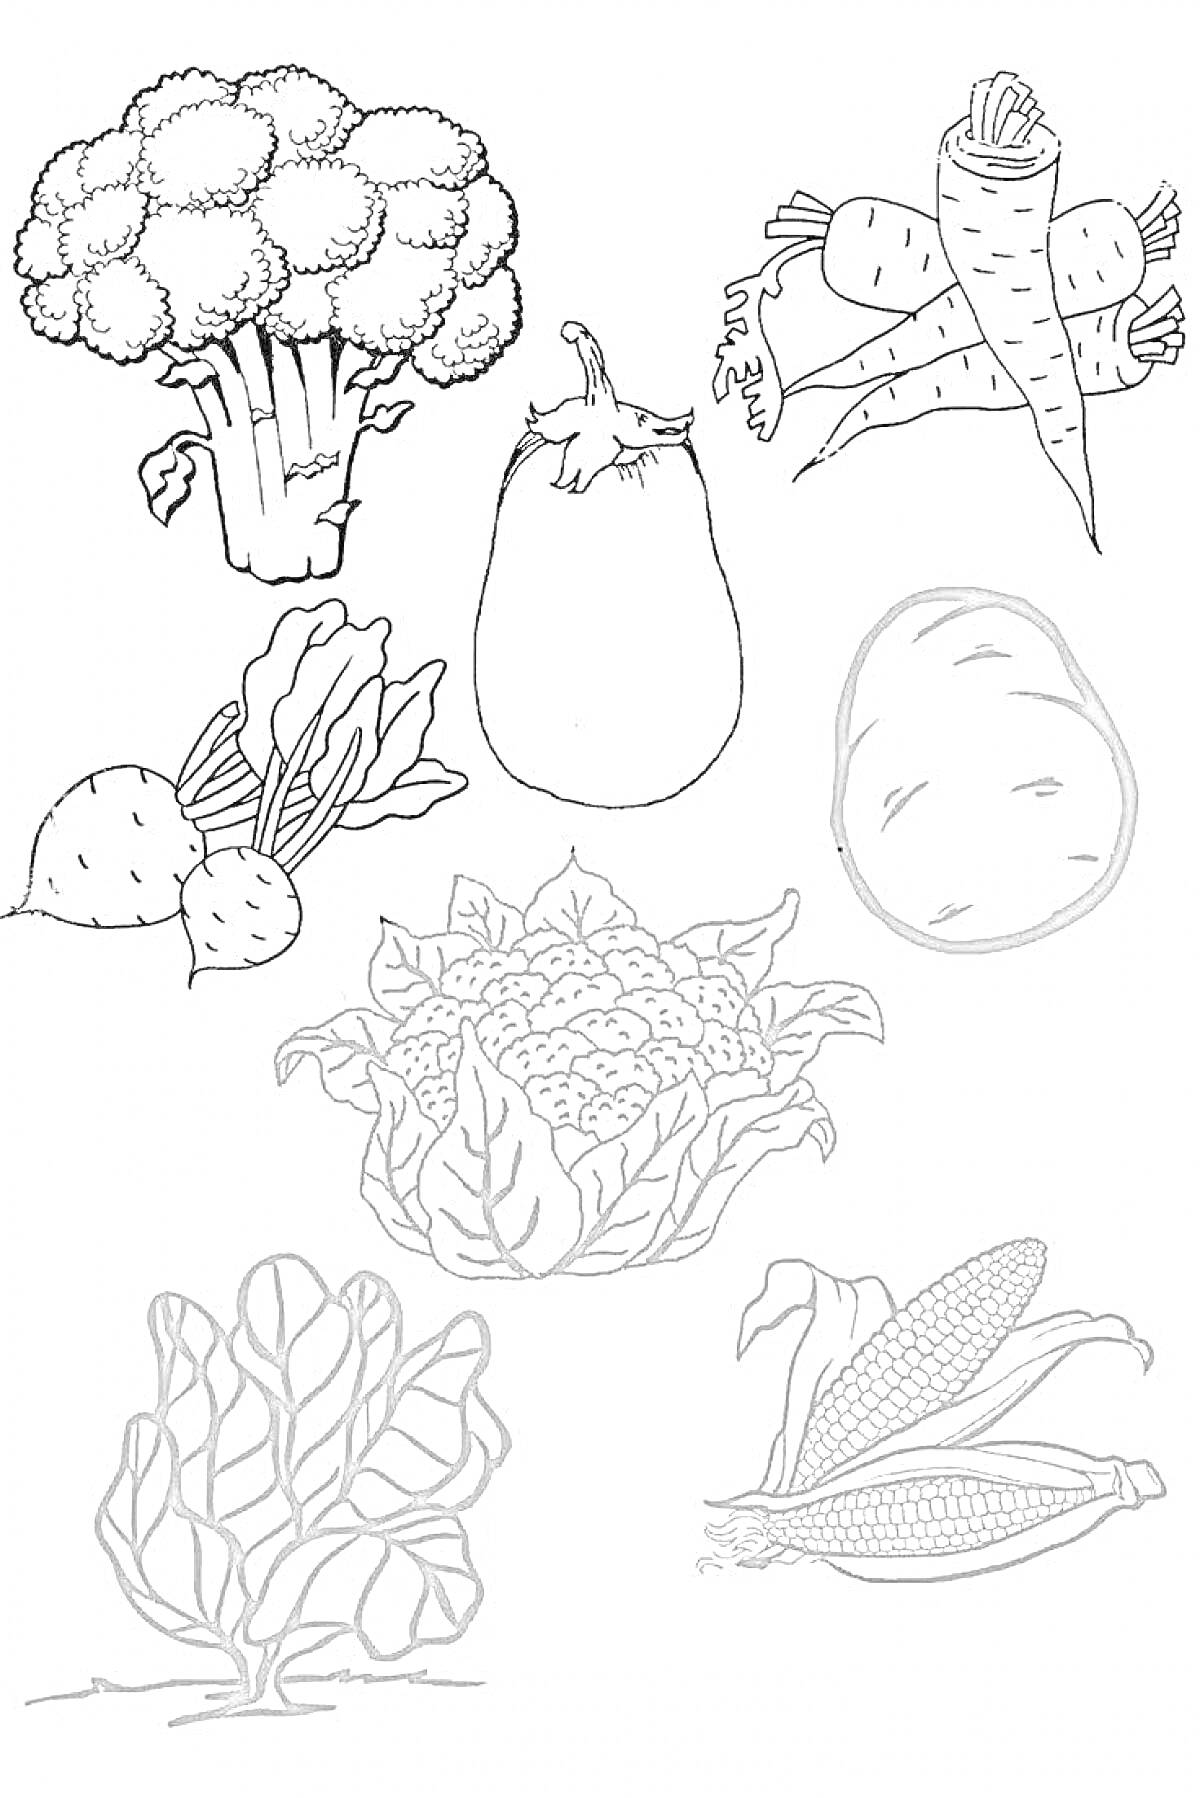 Раскраска Овощи для винегрета: брокколи, морковь, баклажан, картофель, свекла, цветная капуста, салат, кукуруза